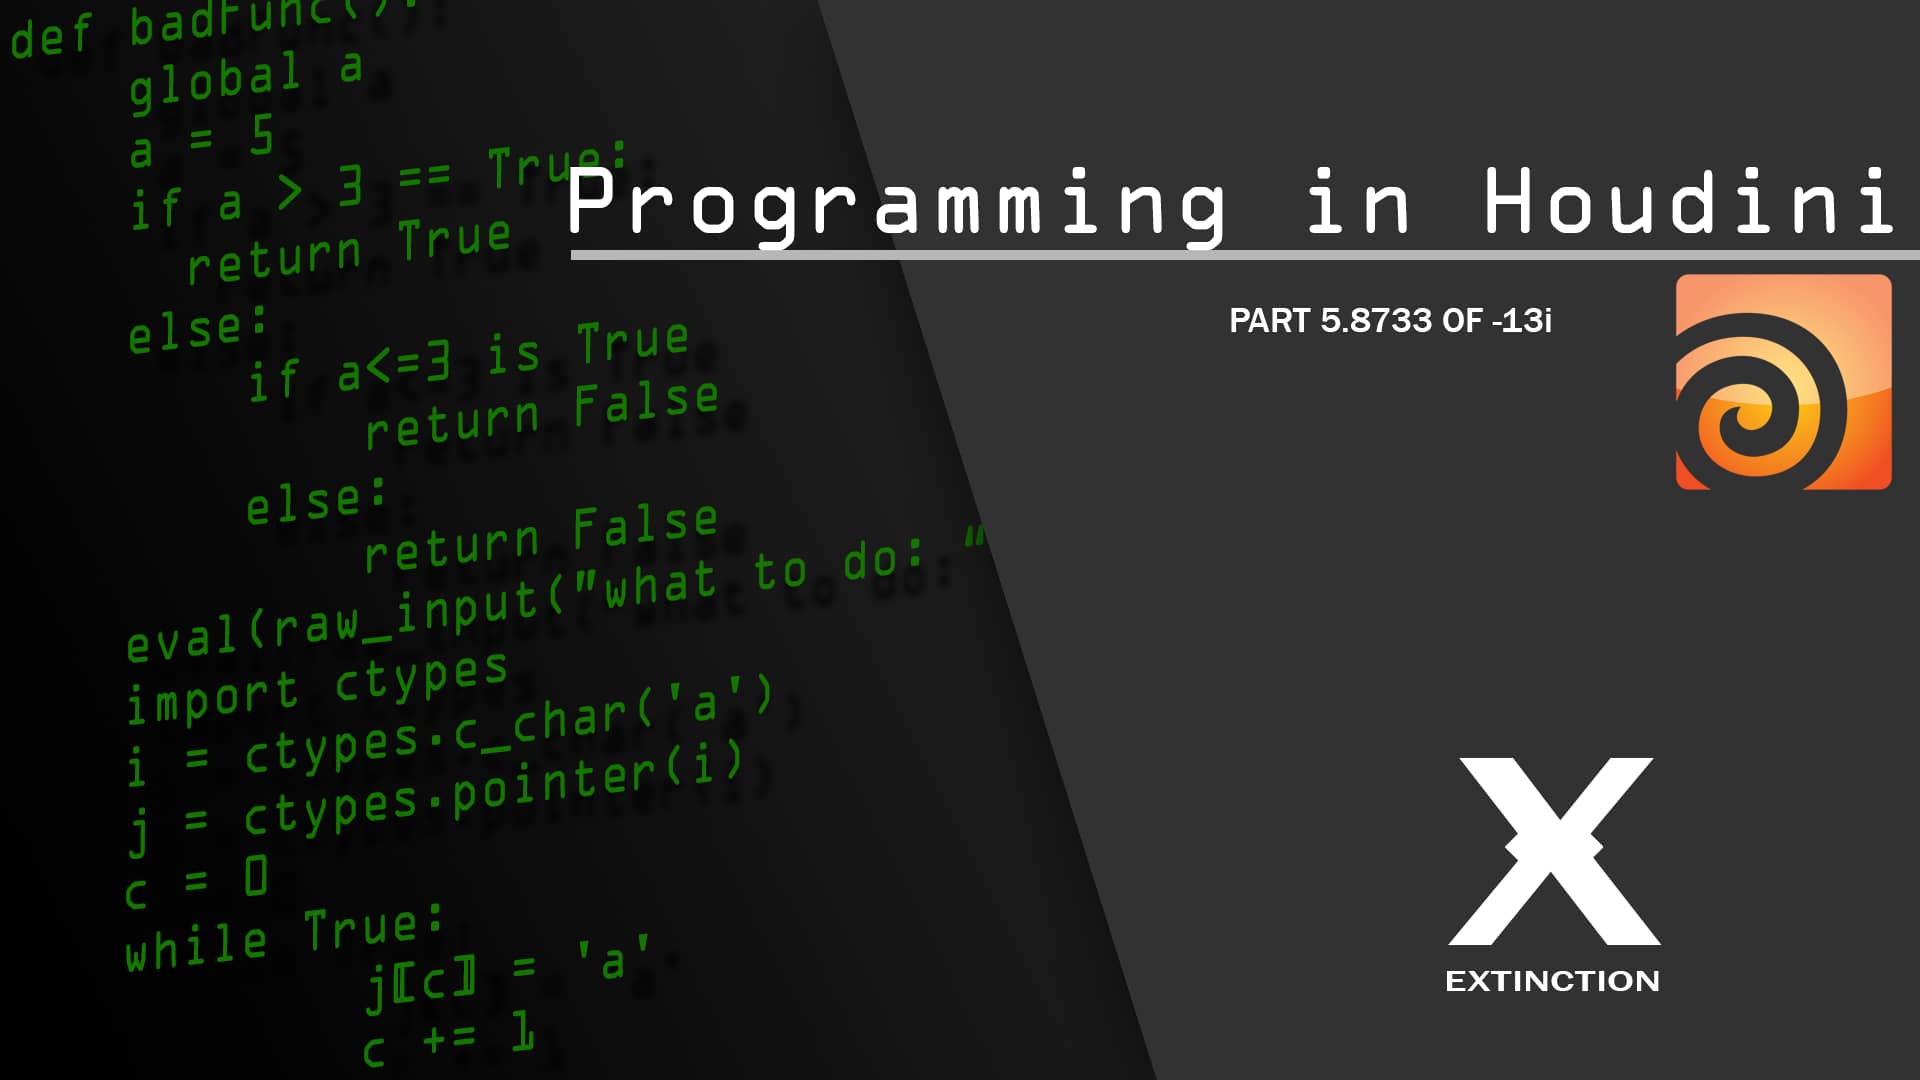 Else false. Return Programming.